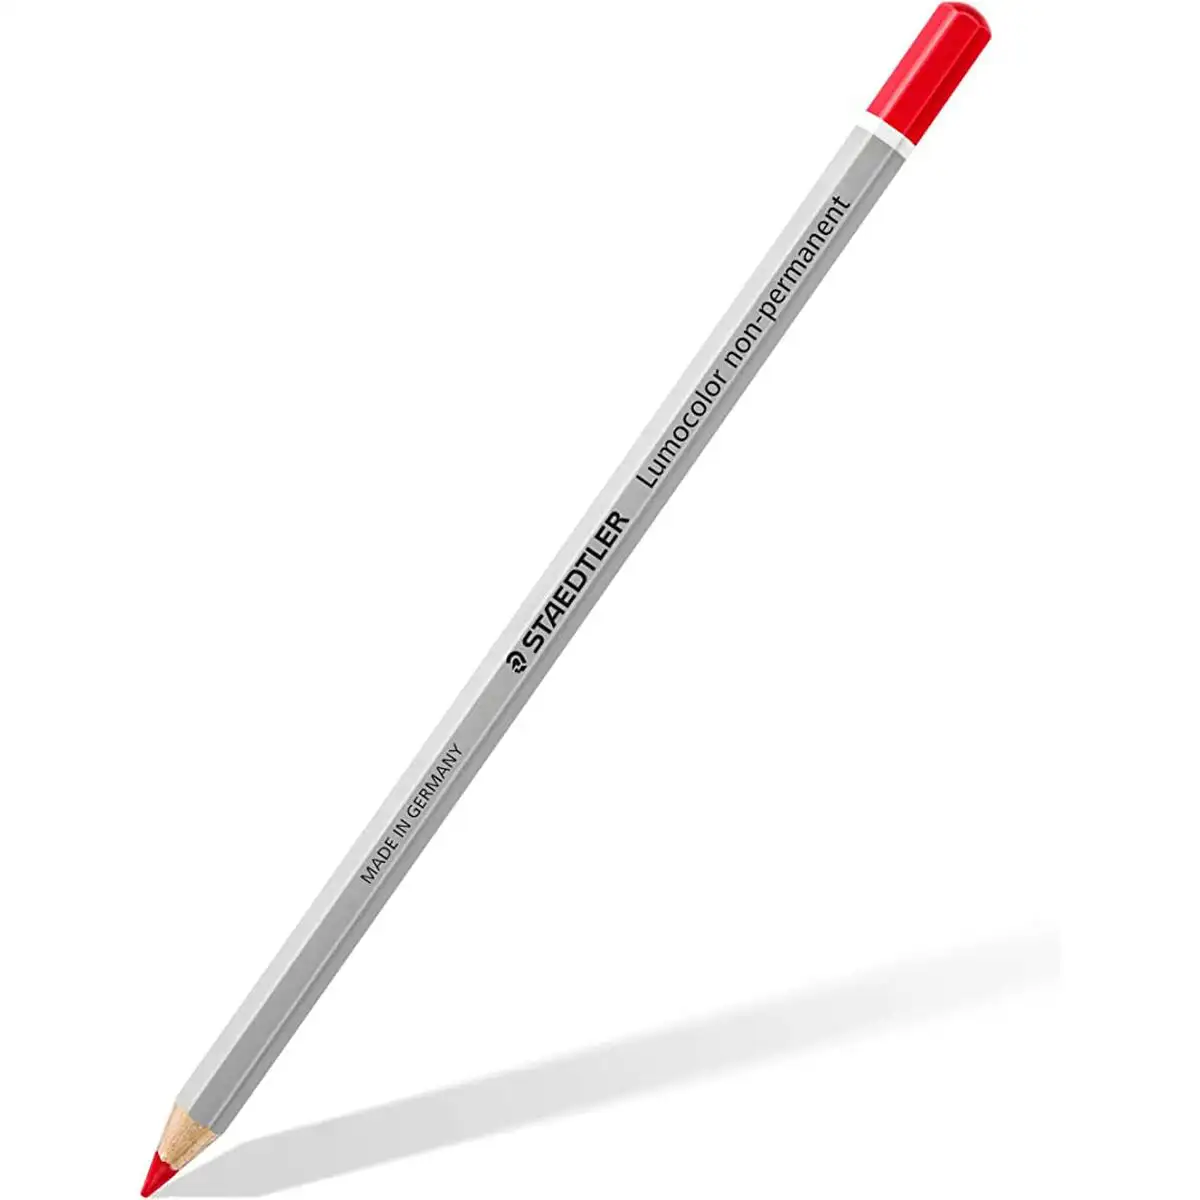 Crayon marqueur staedtler lumocolor non permanent rouge 12 unites _4174. DIAYTAR SENEGAL - Là où Chaque Produit Est une Trouvaille. Parcourez notre catalogue diversifié et découvrez des articles qui enrichiront votre quotidien, du pratique à l'insolite.